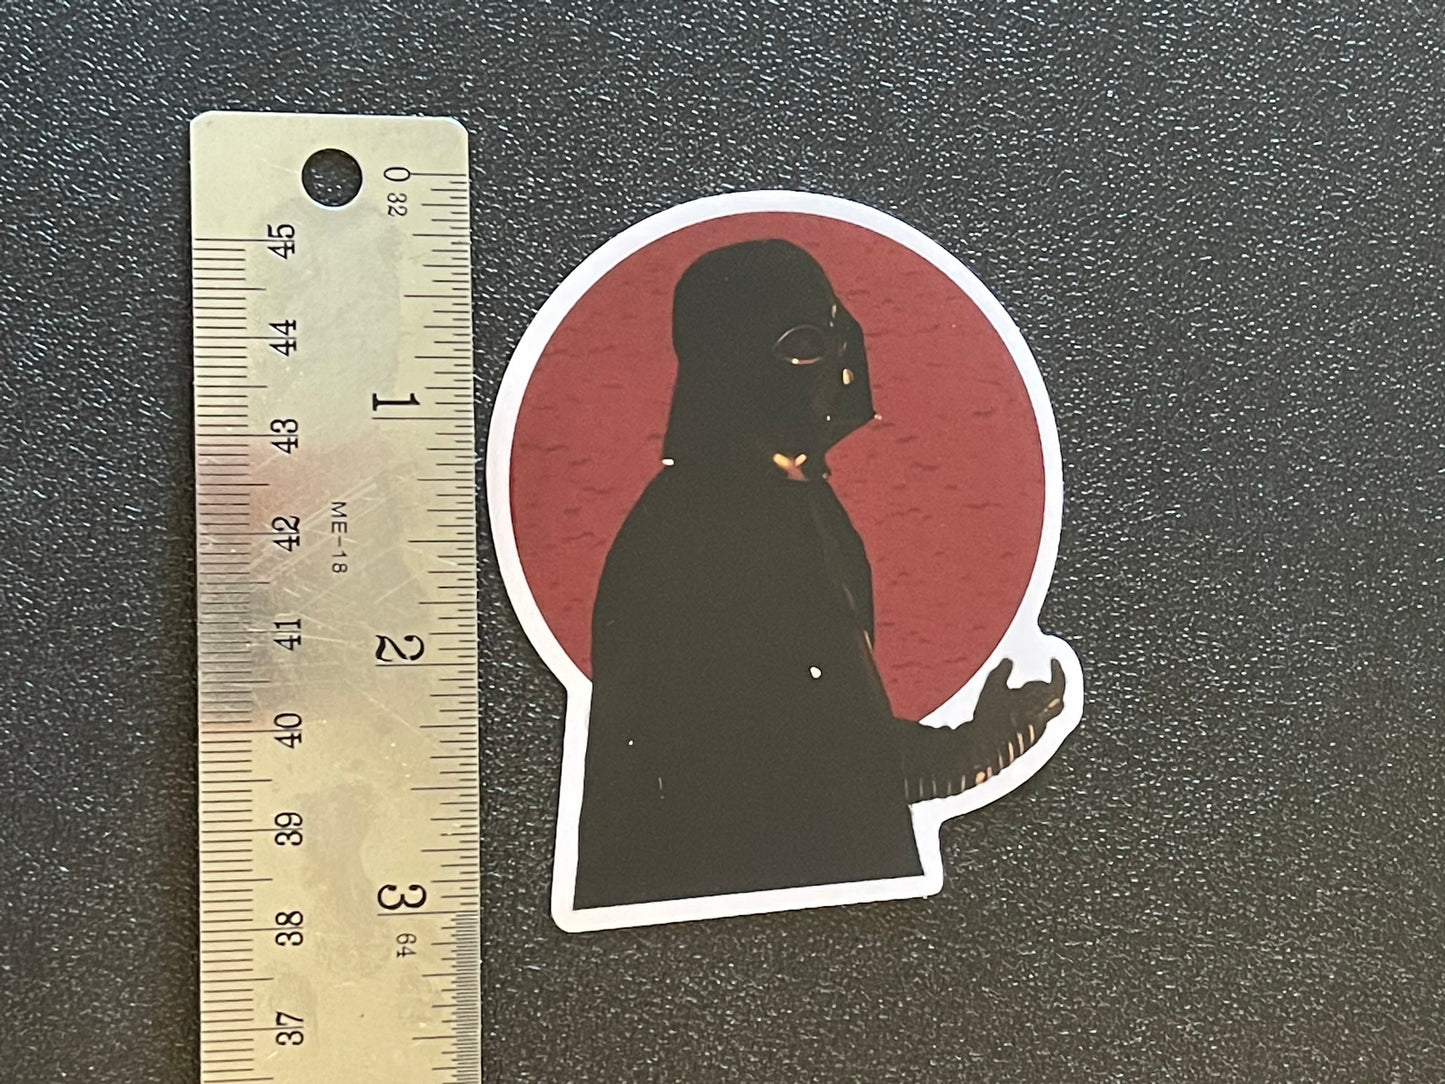 Darth Vader Stained Glass Portrait Sticker